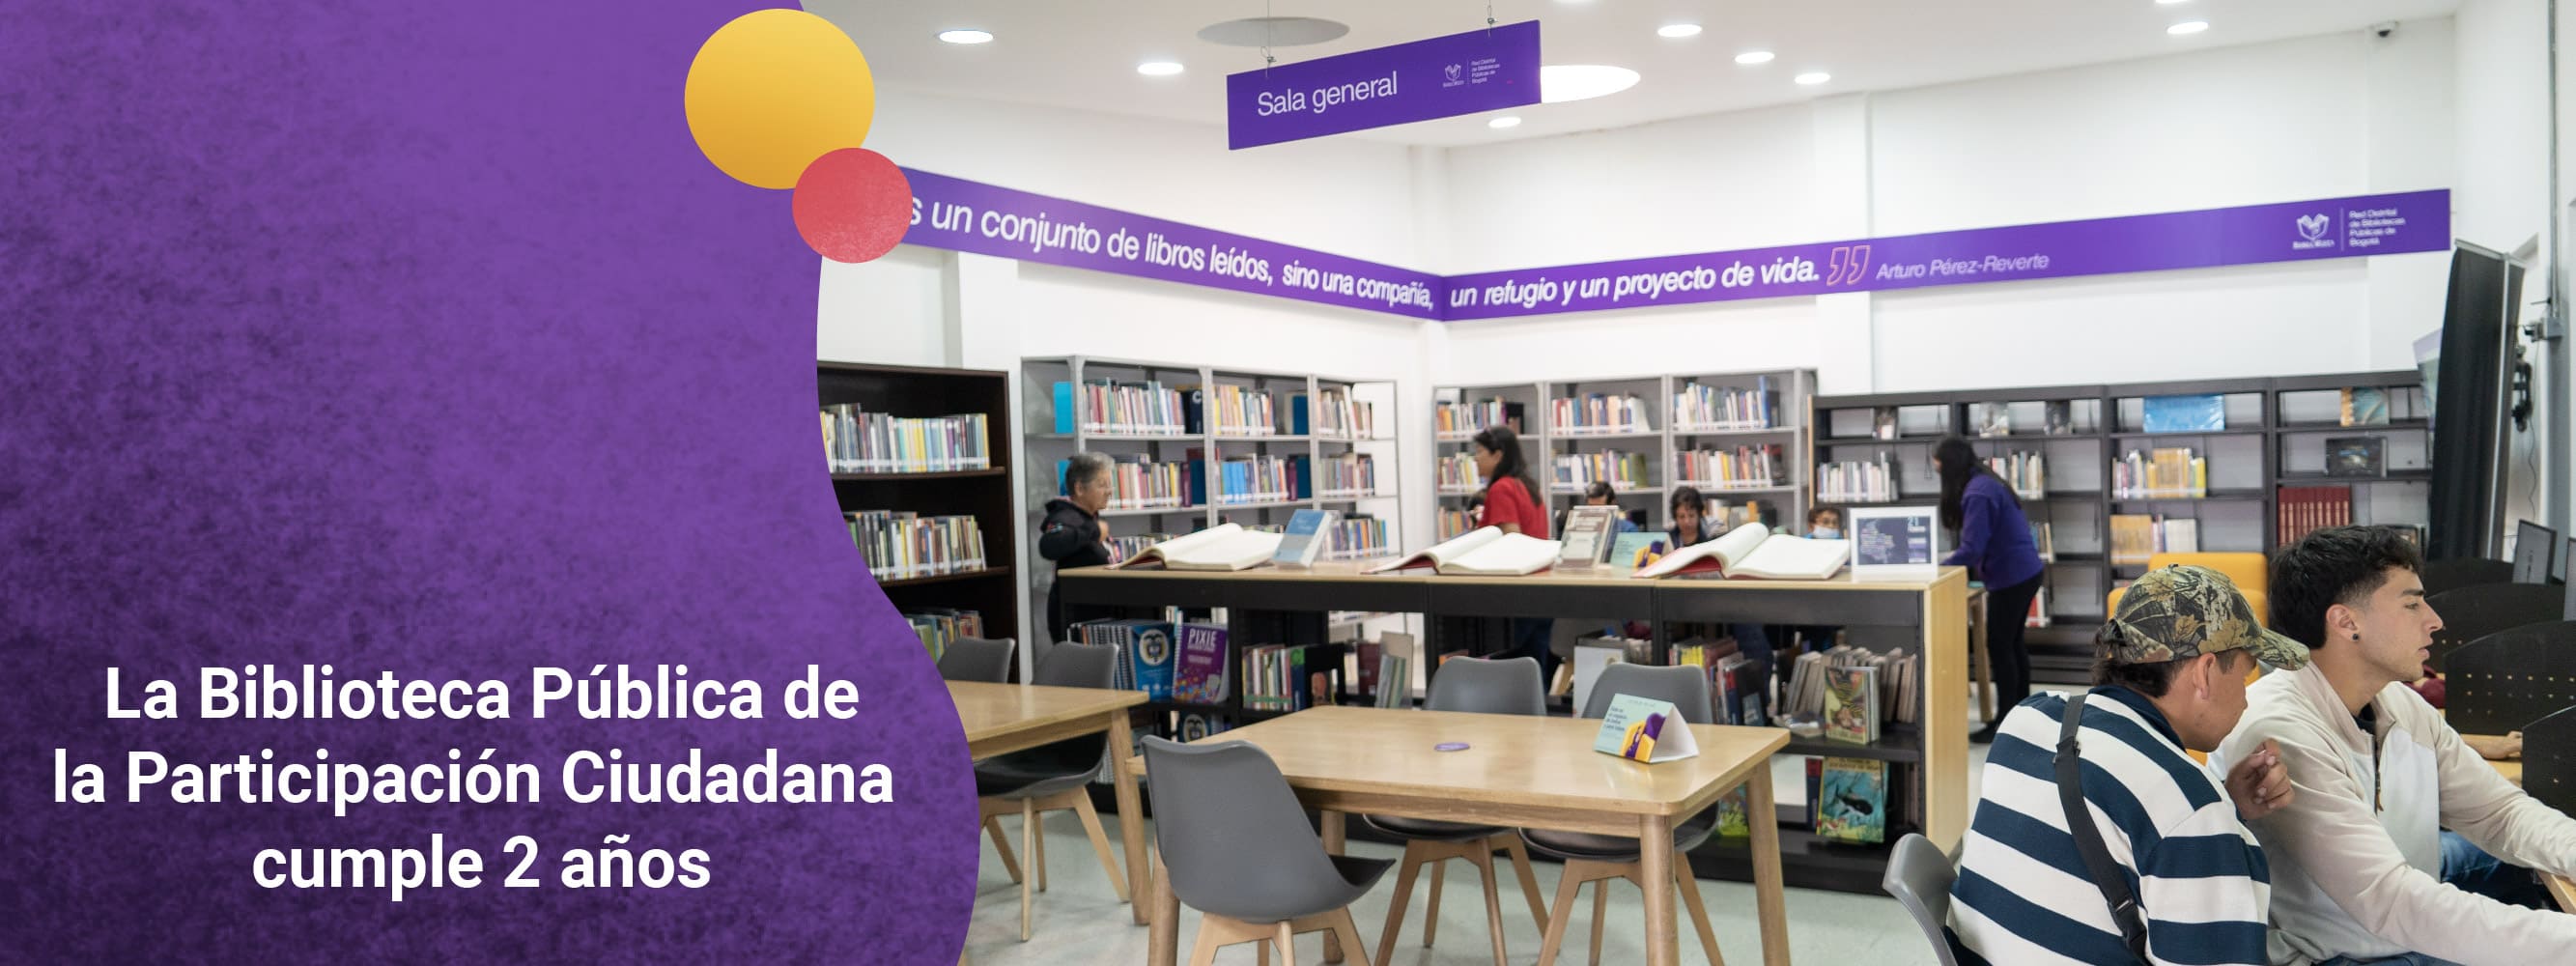 ¡La Biblioteca Pública de la Participación Ciudadana cumple 2 años!